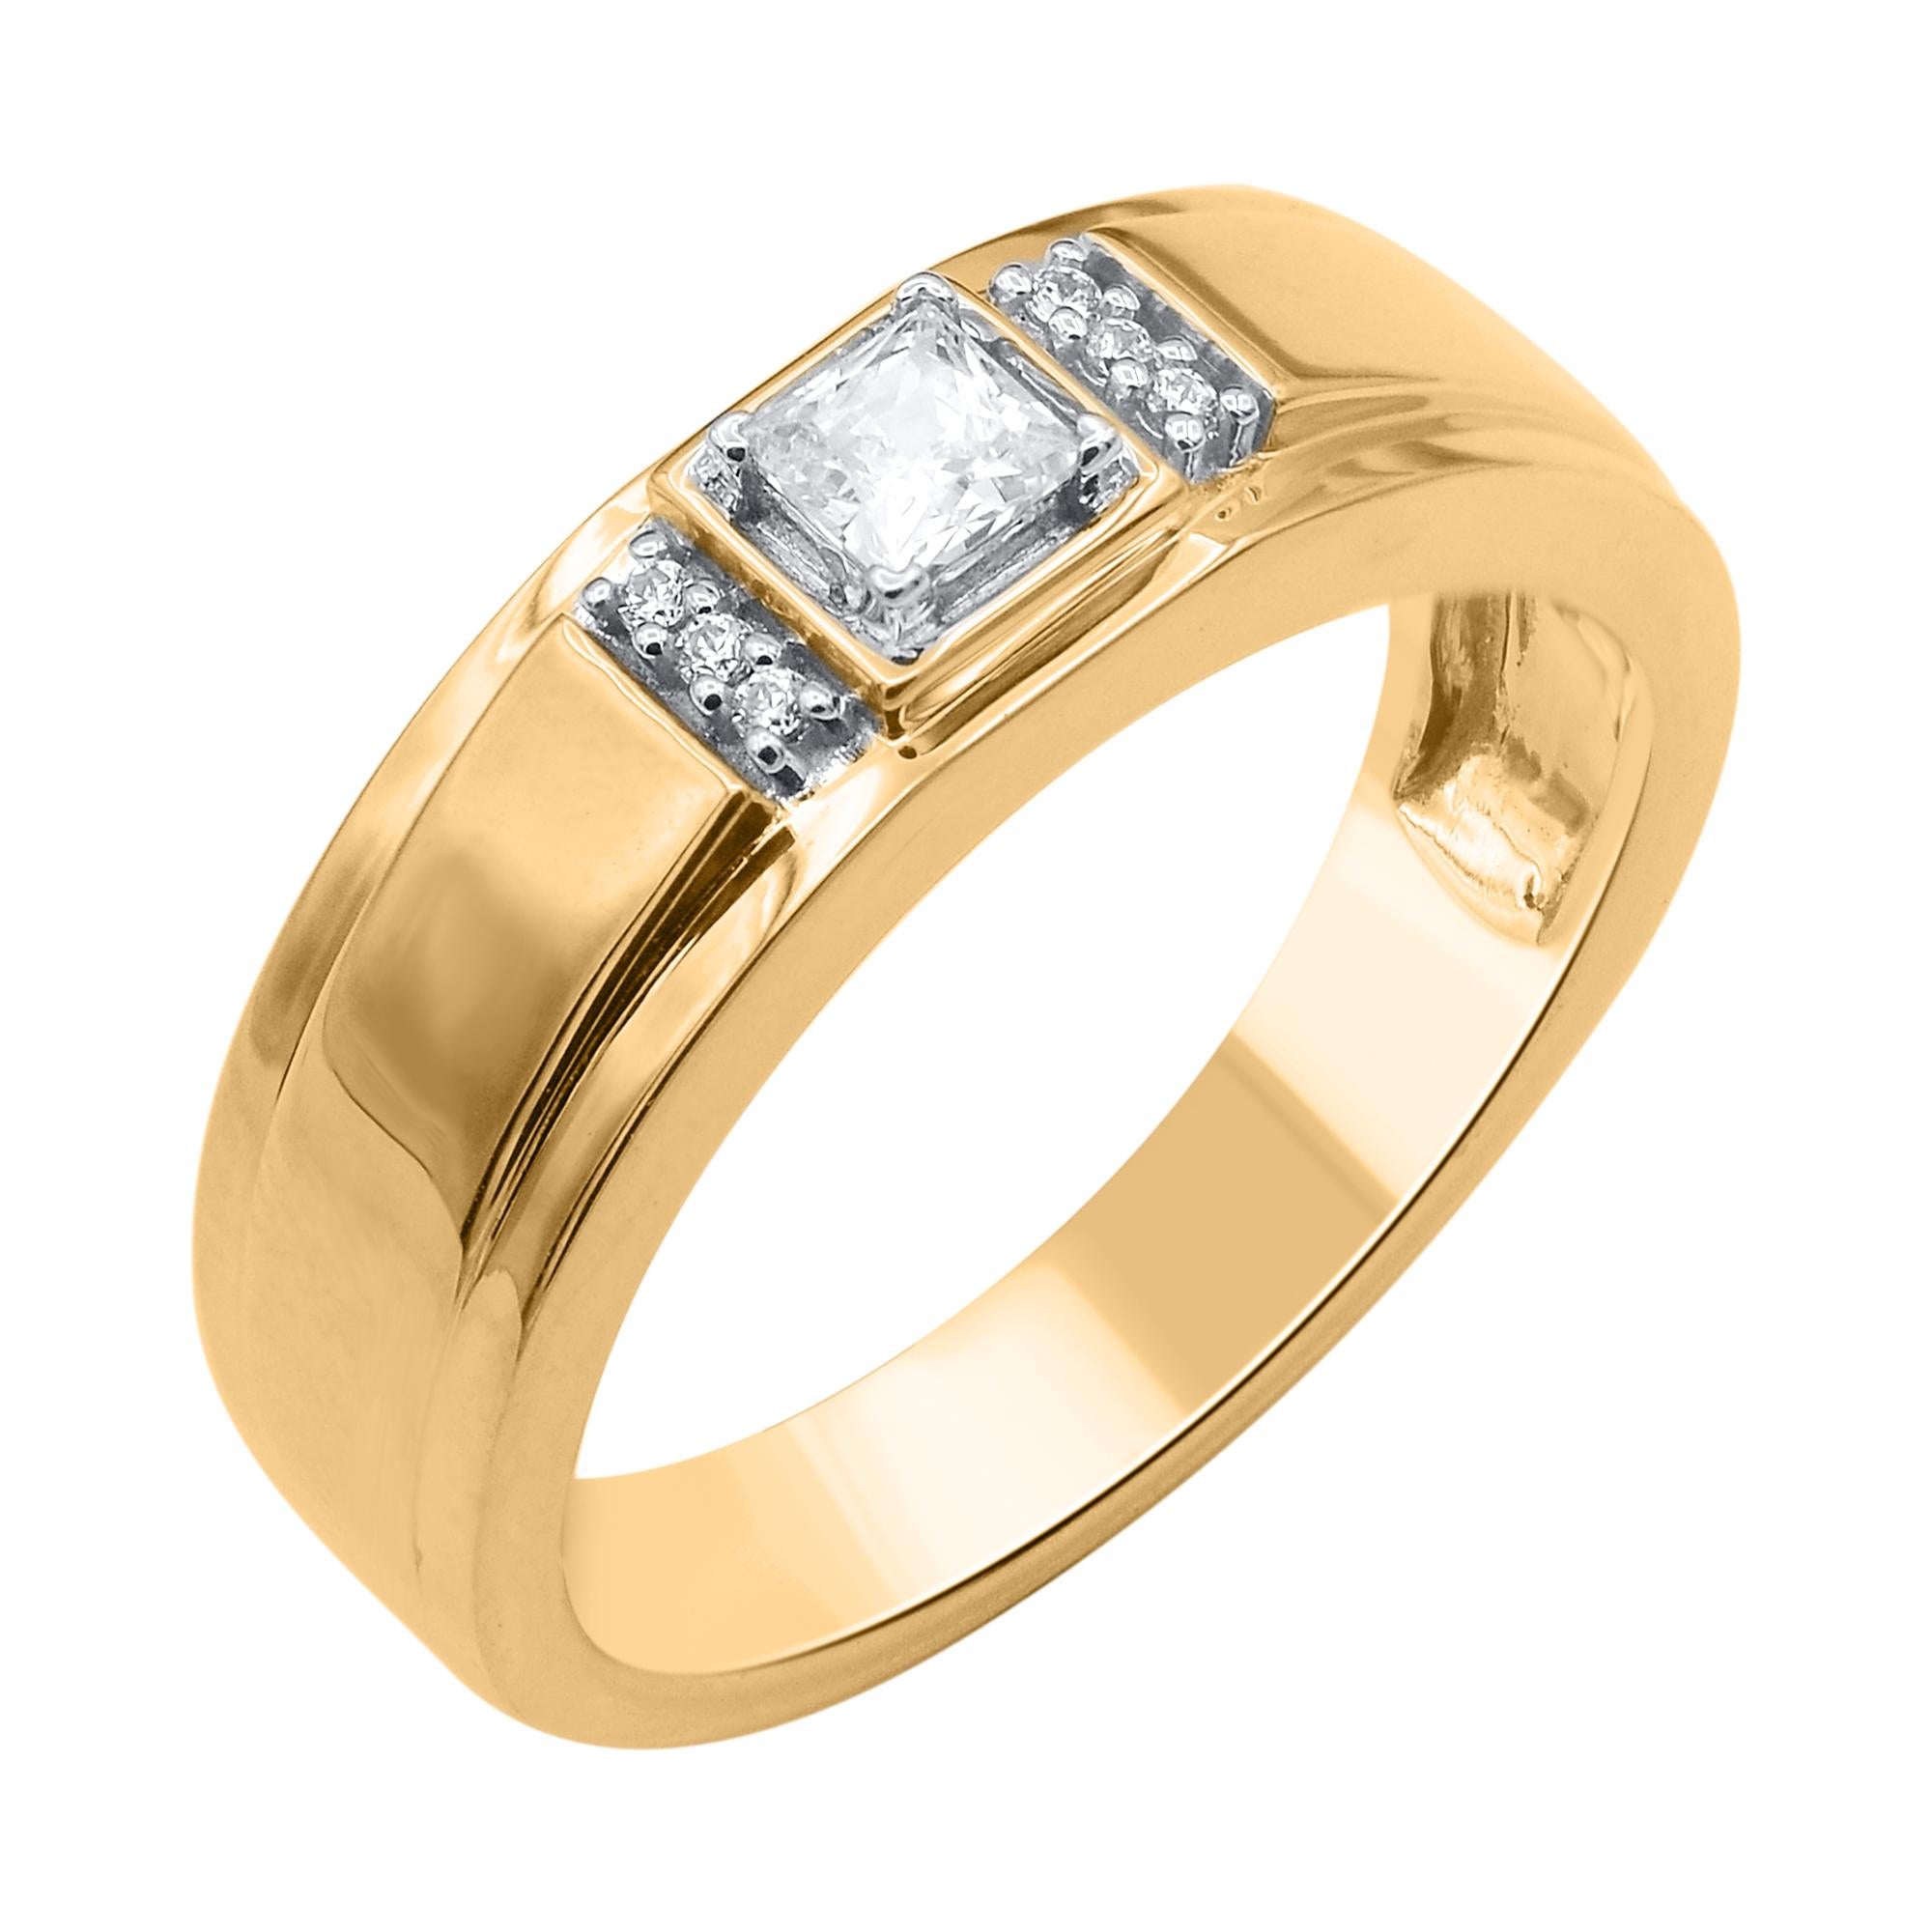 Dieser elegante und raffinierte Ehering für Männer besteht aus einem 0,33 Karat schweren Naturdiamanten mit sieben Steinen im Prinzess- und Brillantschliff in Zackenfassung. Die weißen Diamanten sind mit der Farbe H-I und der Reinheit I-2 eingestuft.